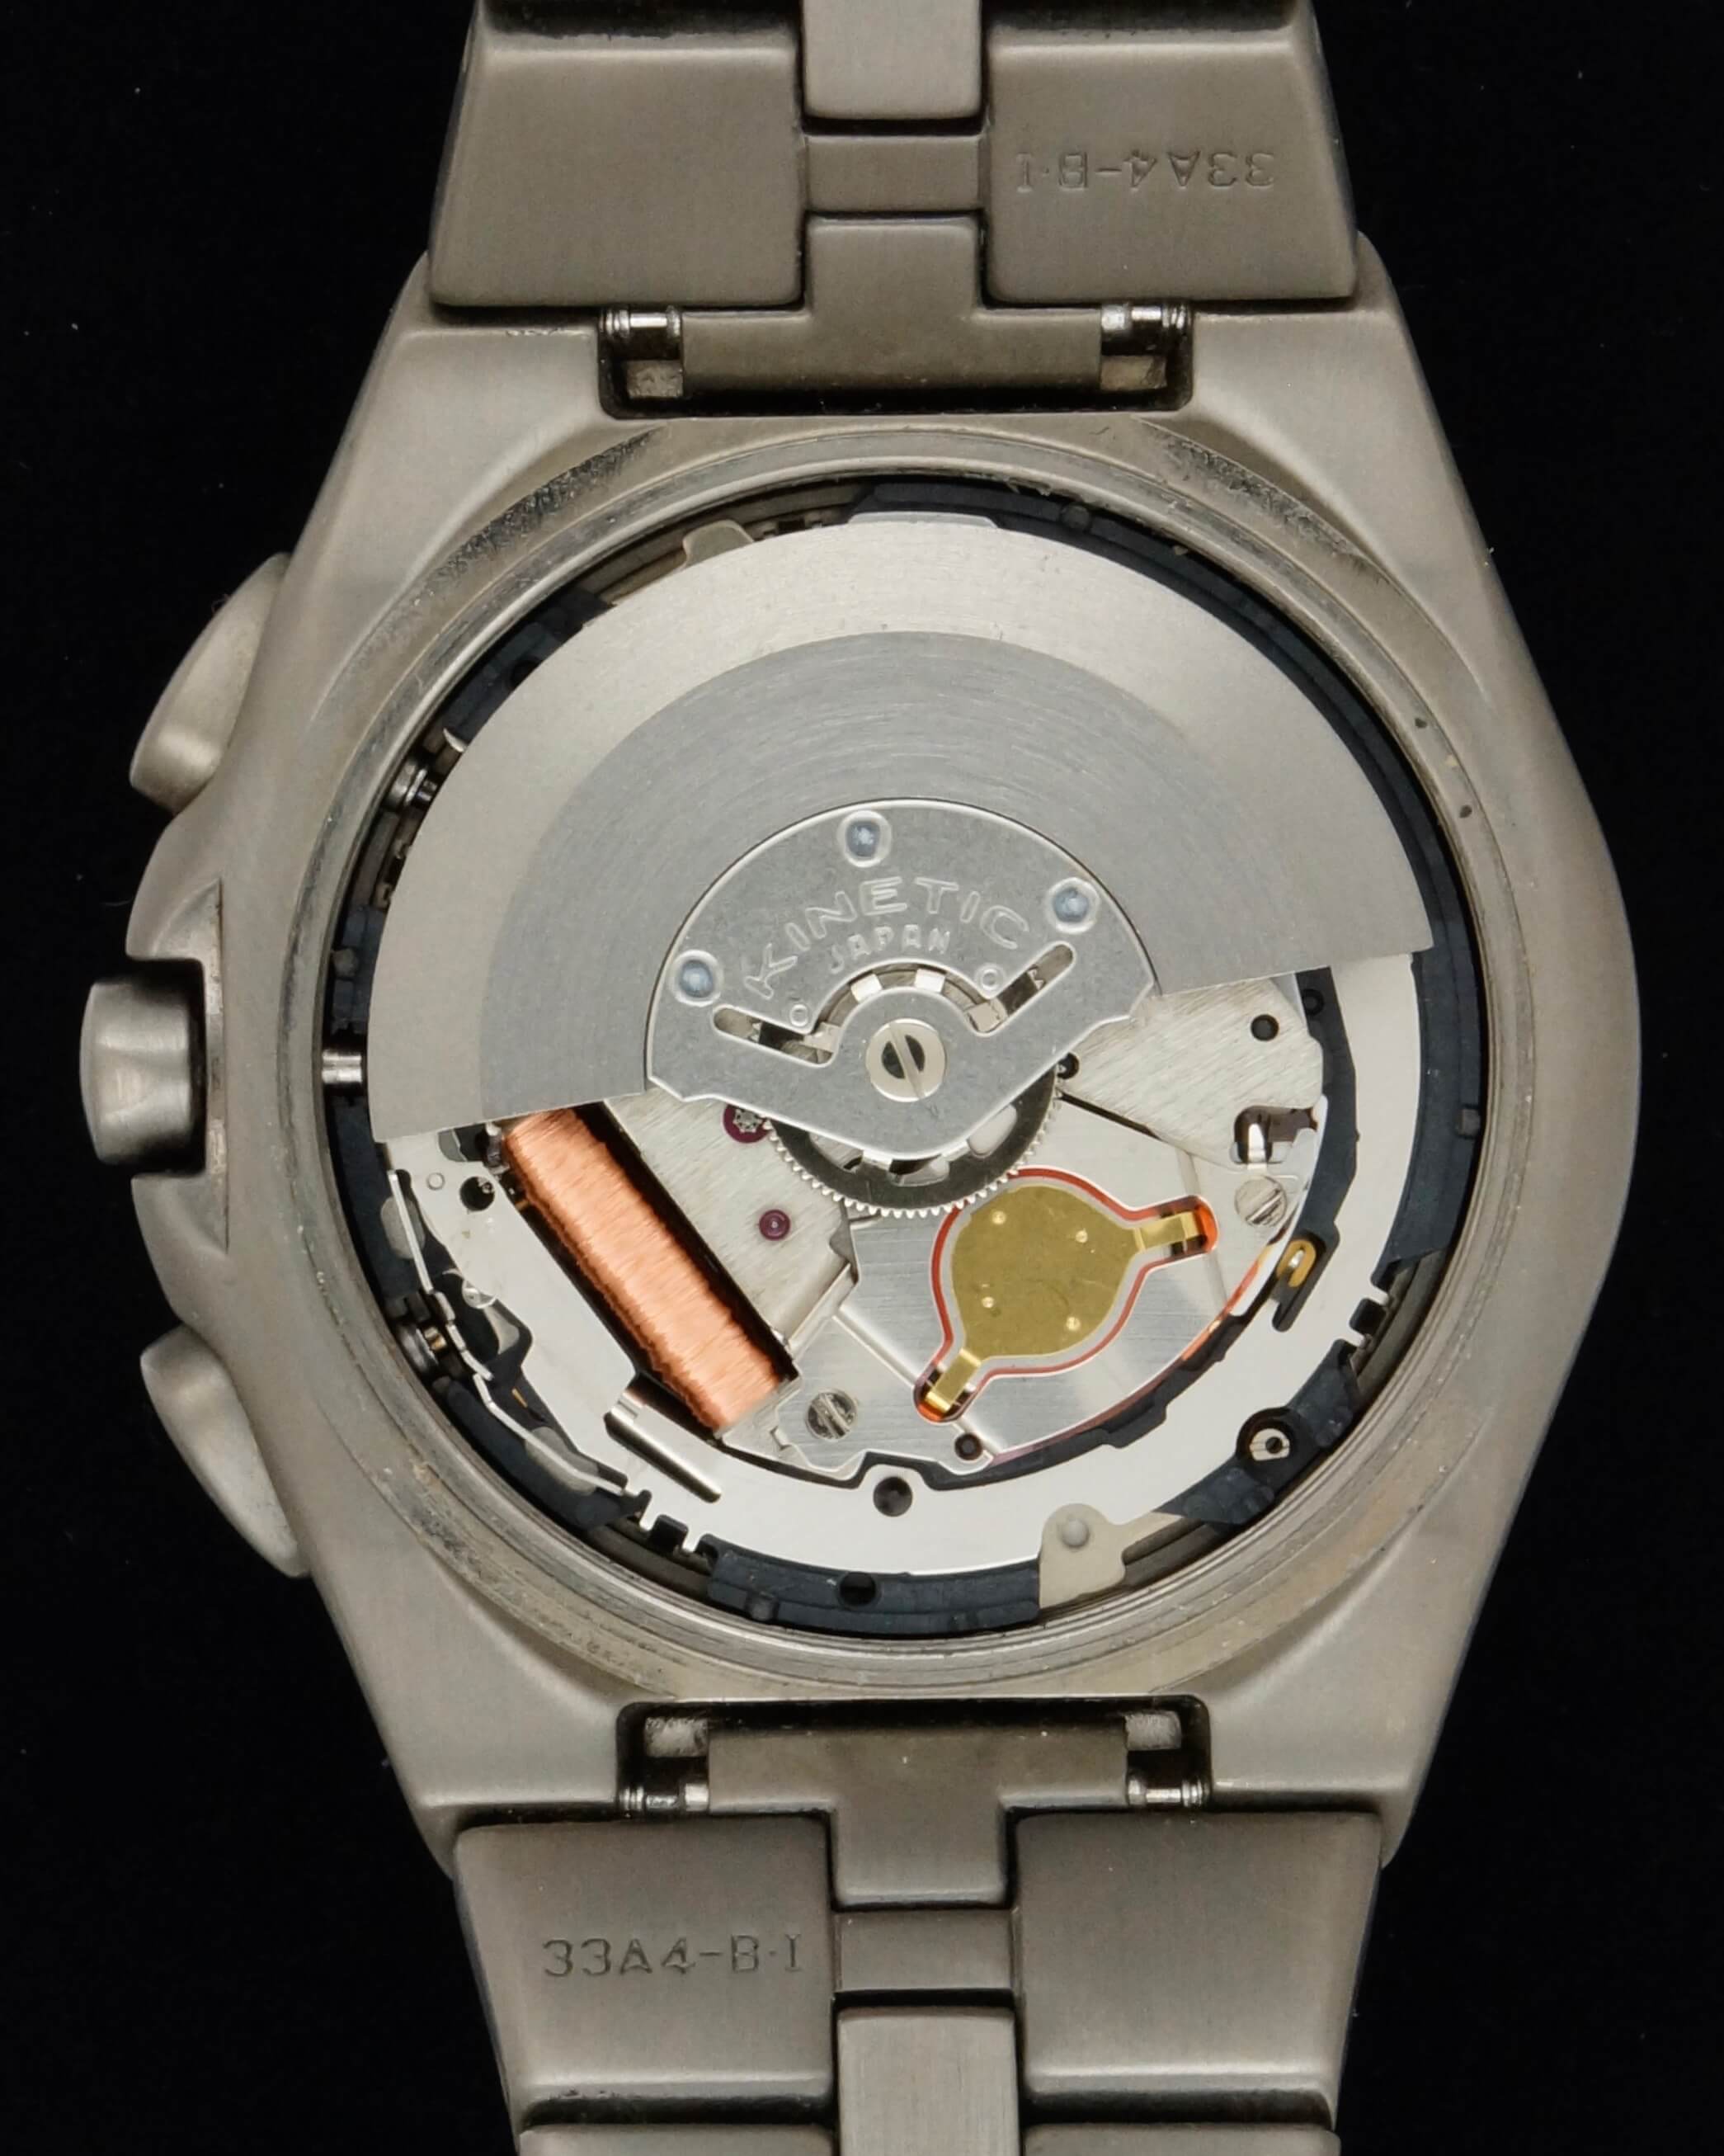 Seiko Kinetic | A La Clinique Horlogère, réparation et vente de montres,  Porrentruy, Jura, Suisse